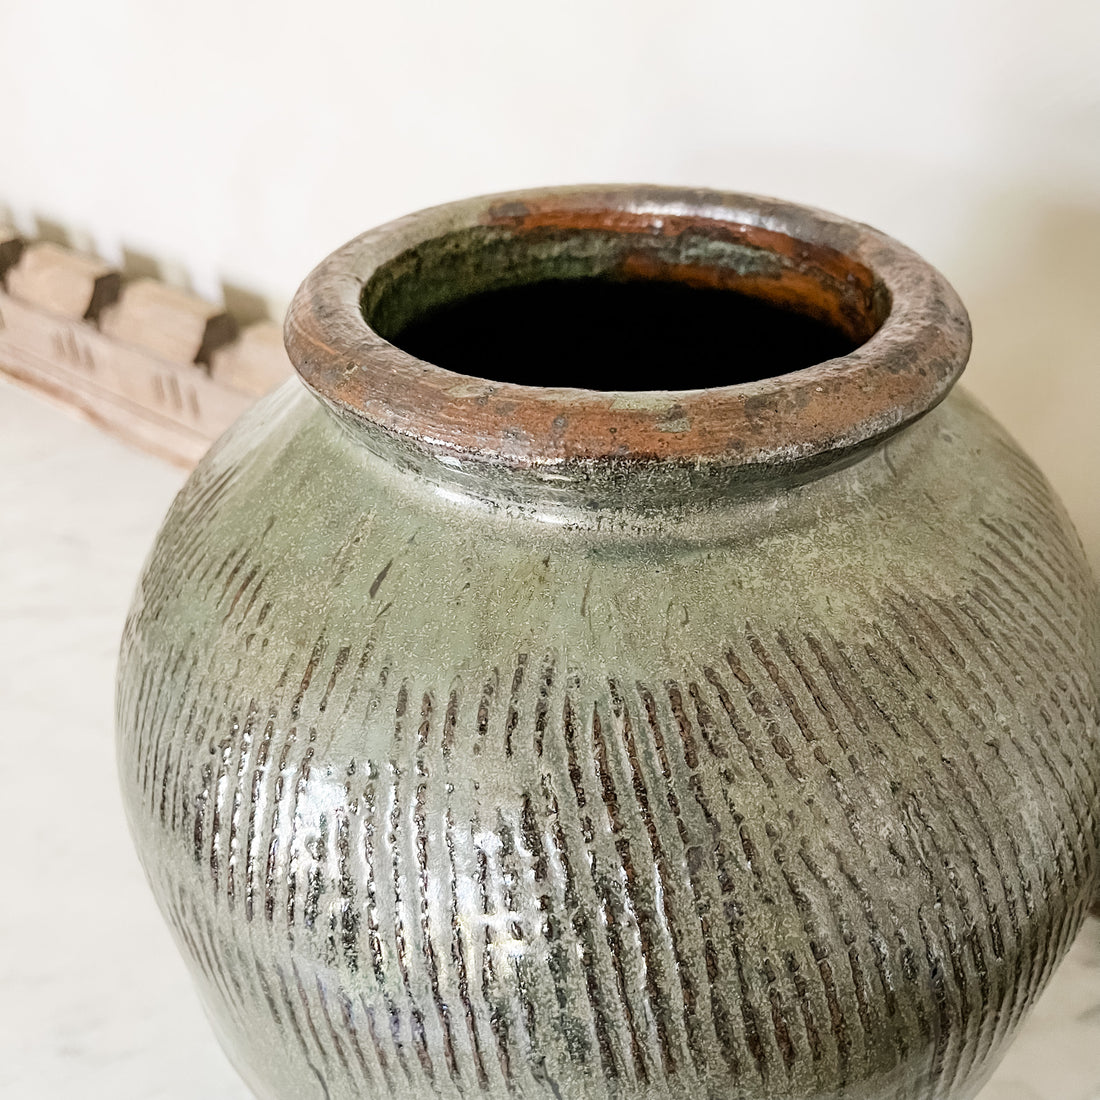 Antique Green Textured Pot